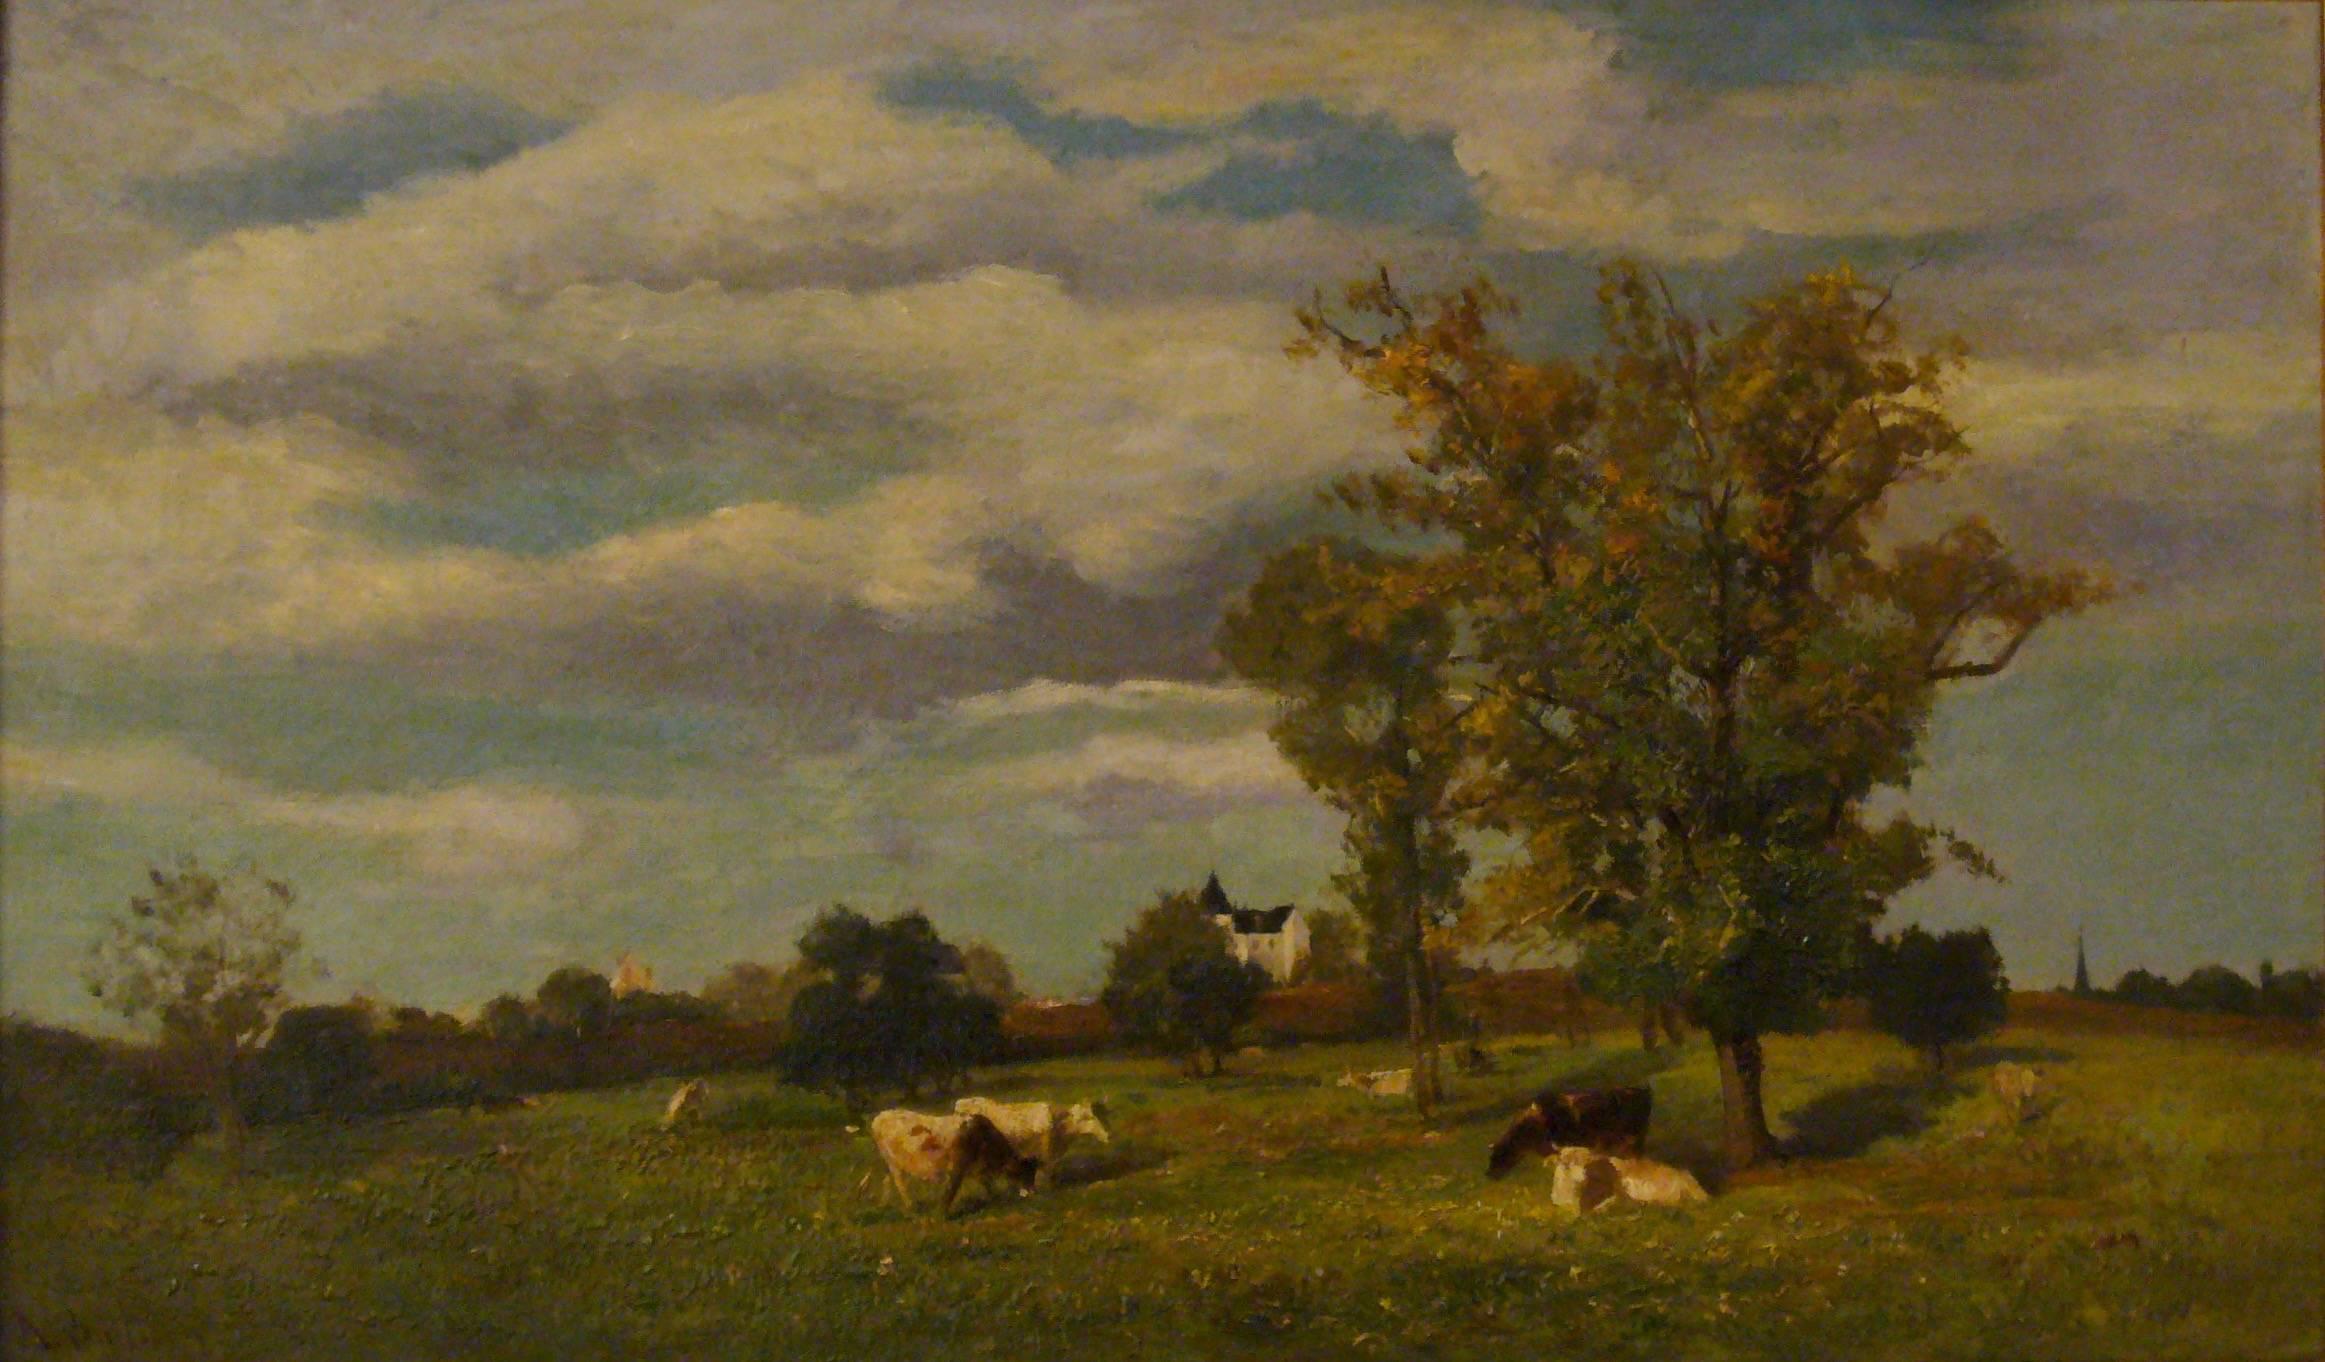 Jacques Alfred Brielman Landscape Painting - Vaches dans un paysage de printemps près d'un chateau - 19th Century Landscape 